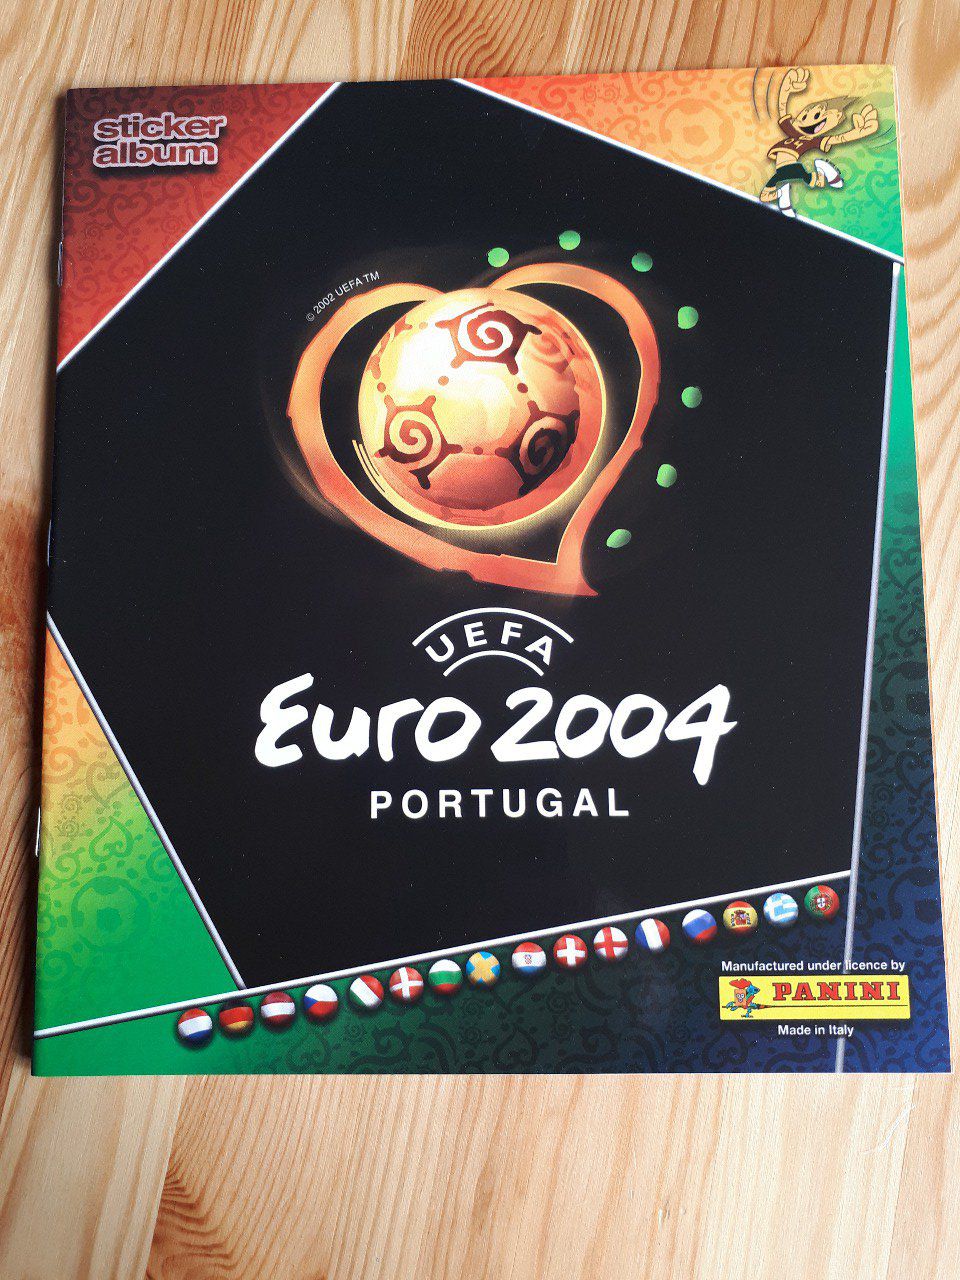 Euro 2004 images à la pièce